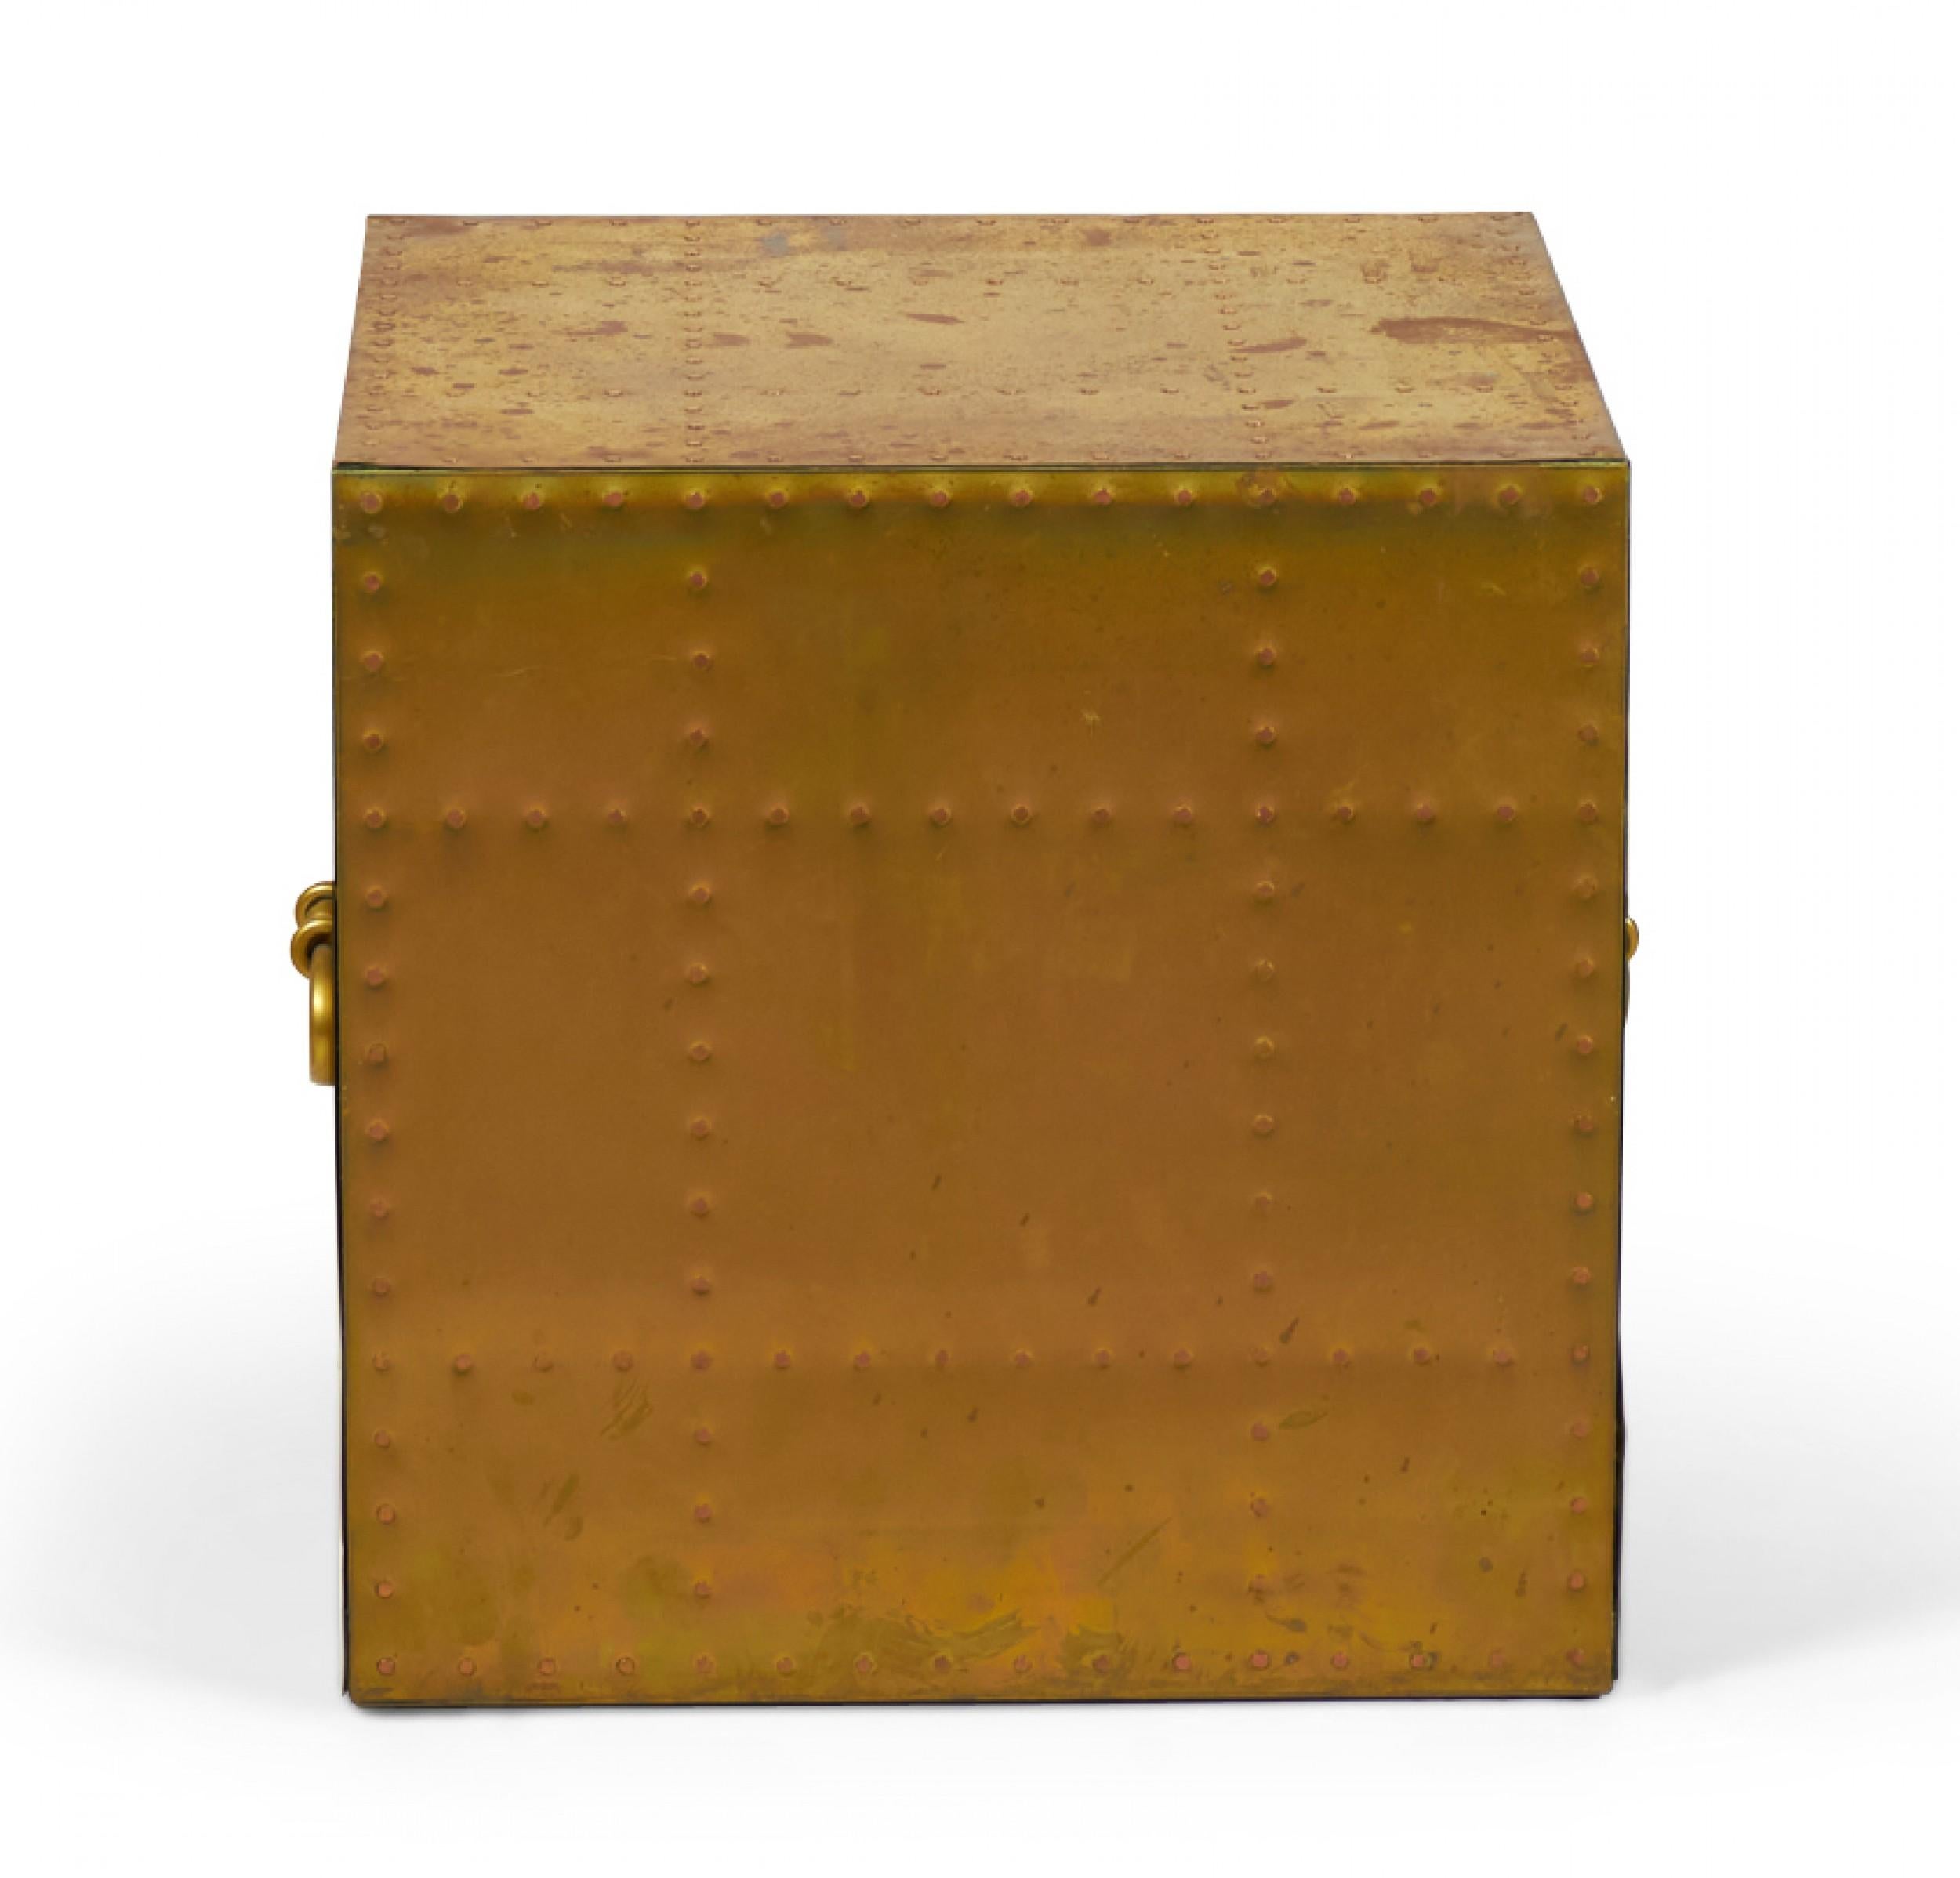 Table d'appoint cubique en laiton de style espagnol avec patine naturelle, clous en cuivre et deux poignées arrondies en laiton. (SARREID, LTD)(Pièces similaires disponibles avec différentes patines : DUF0026A-E, commodes similaires : DUF0025A-D)